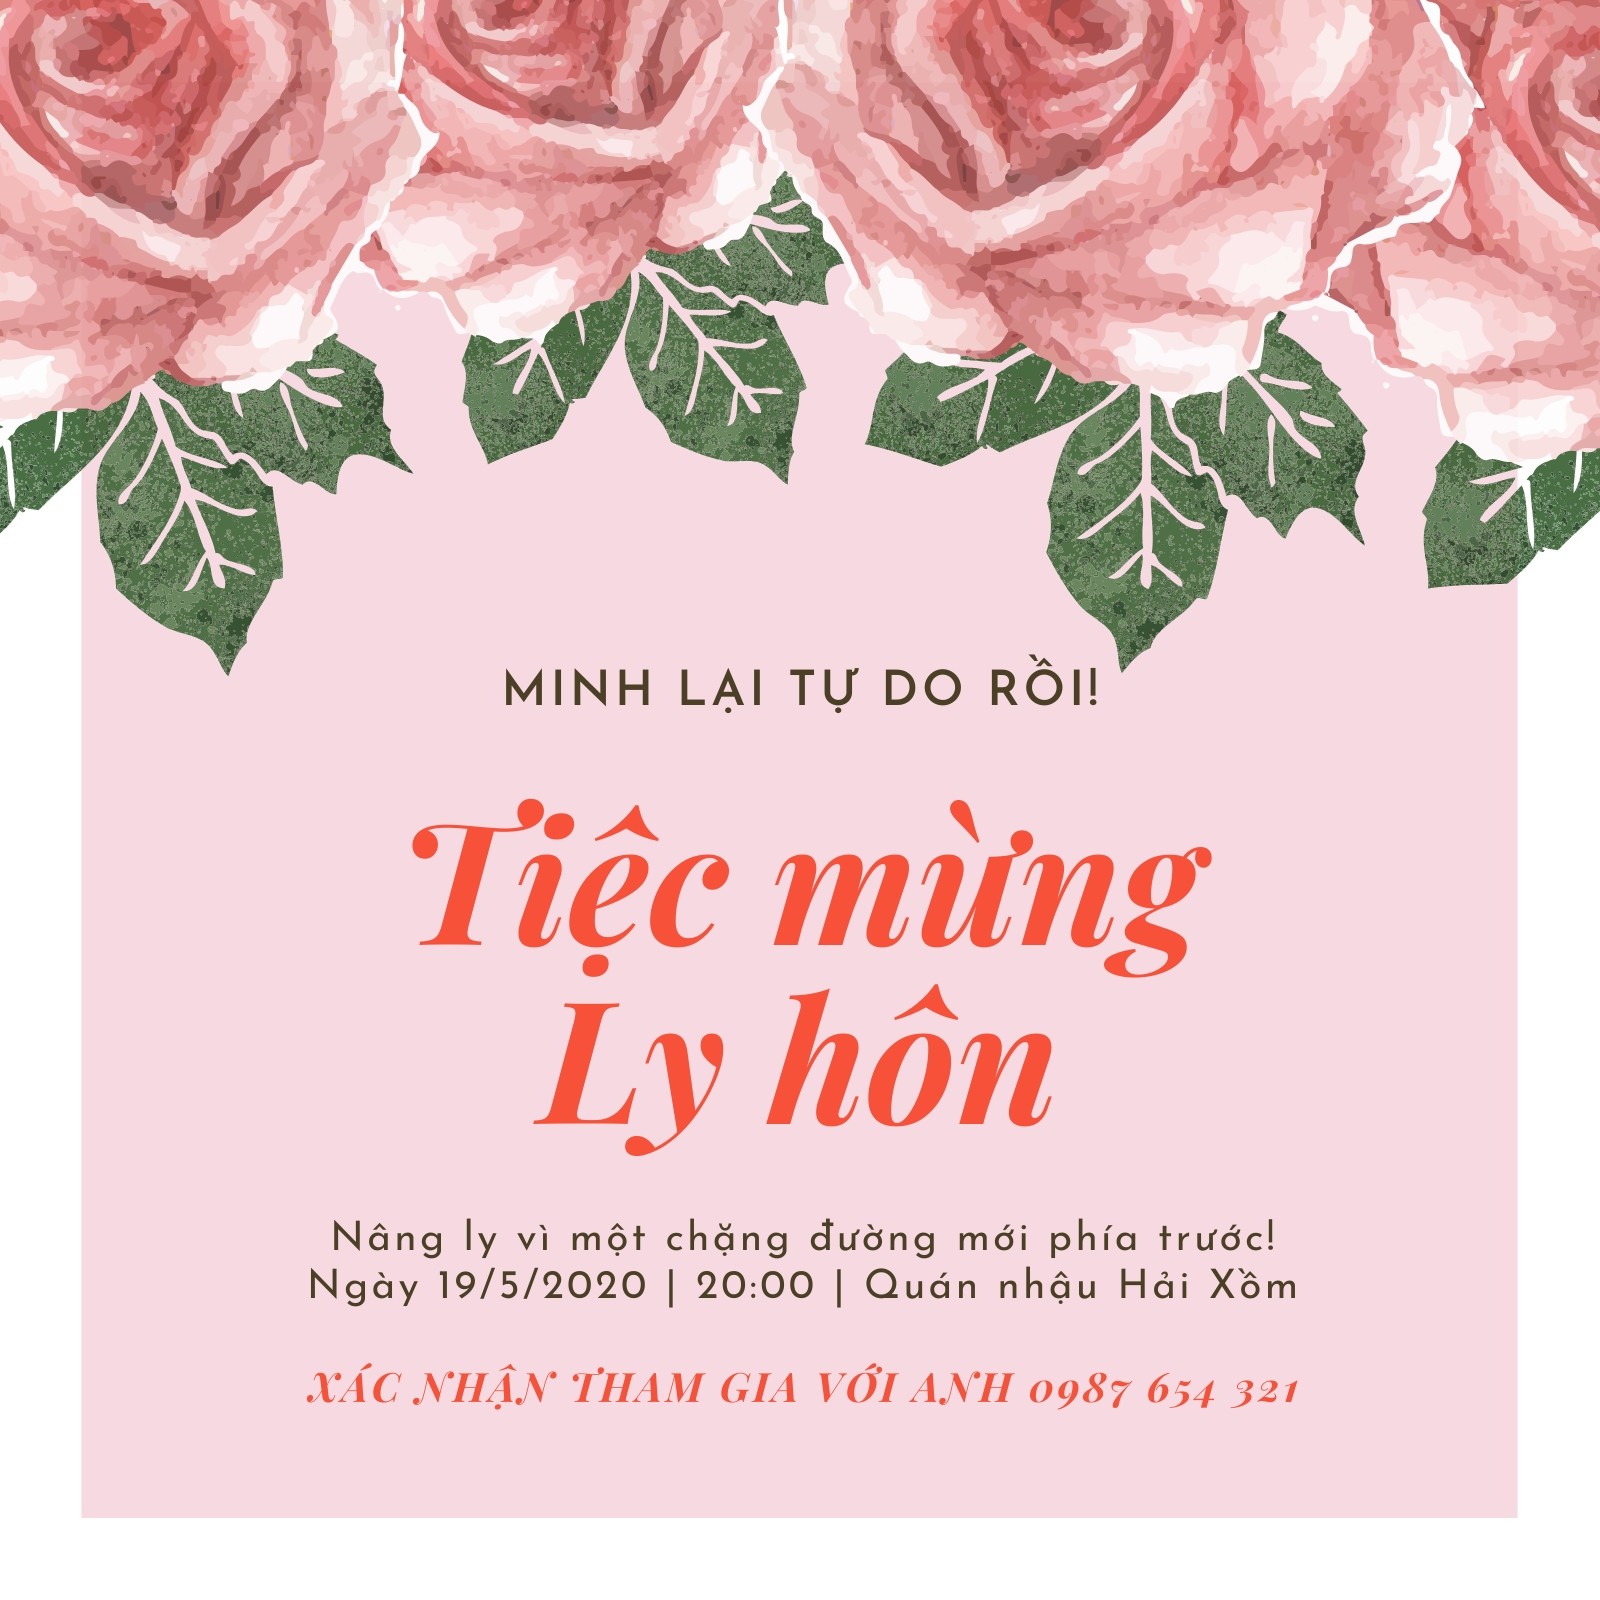 Với Muvik - một trong những công ty tổ chức đám cưới hàng đầu tại Việt Nam, bạn sẽ được tư vấn và lựa chọn ra thiệp mời đẹp nhất để thể hiện sự độc đáo và sáng tạo.